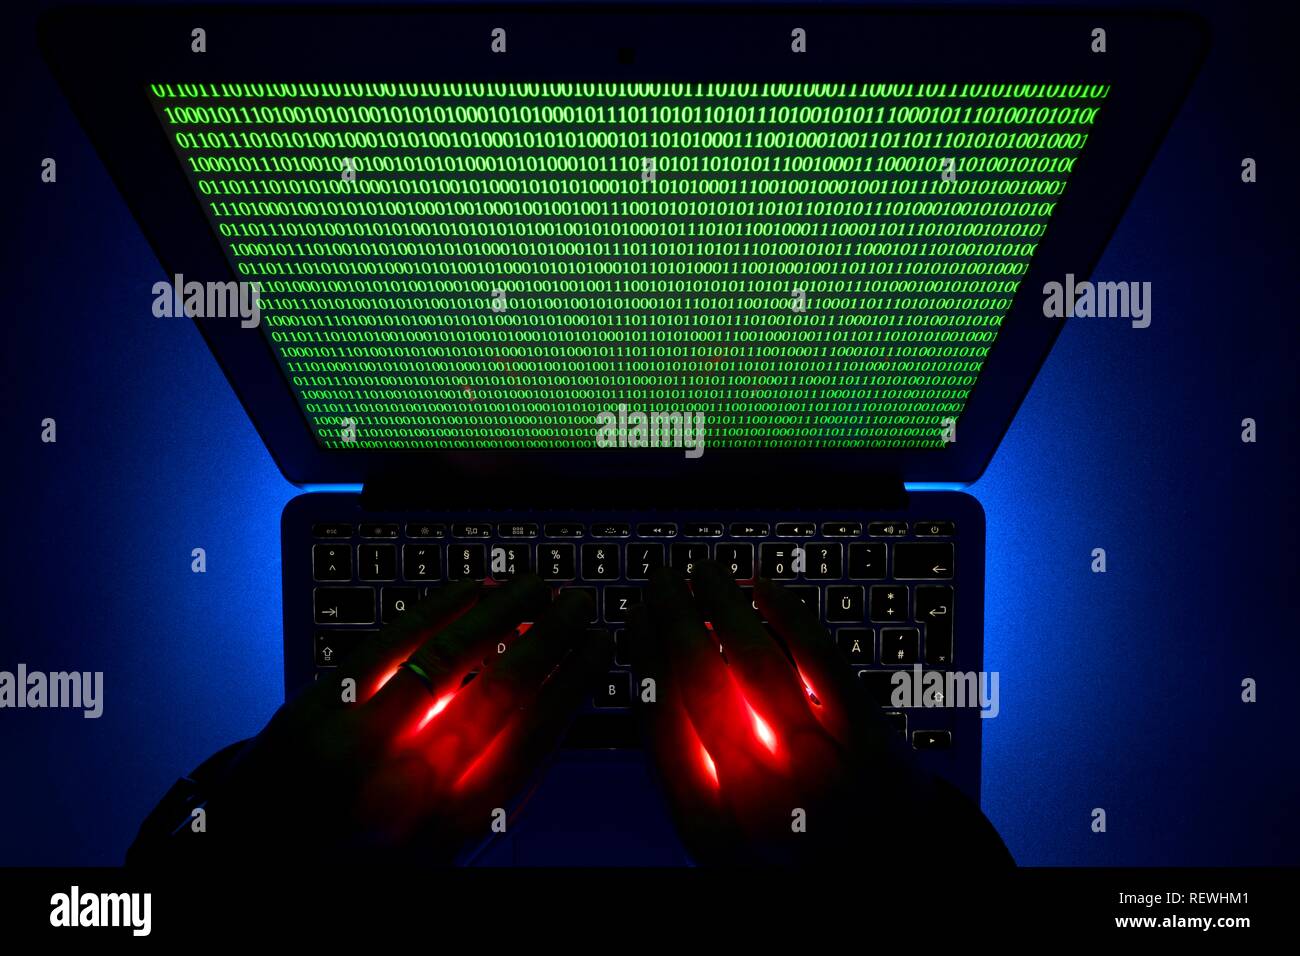 Les mains sur un clavier d'ordinateur, symbole de droit la cybercriminalité, la criminalité informatique, la vie privée, Bade-Wurtemberg, Allemagne Banque D'Images